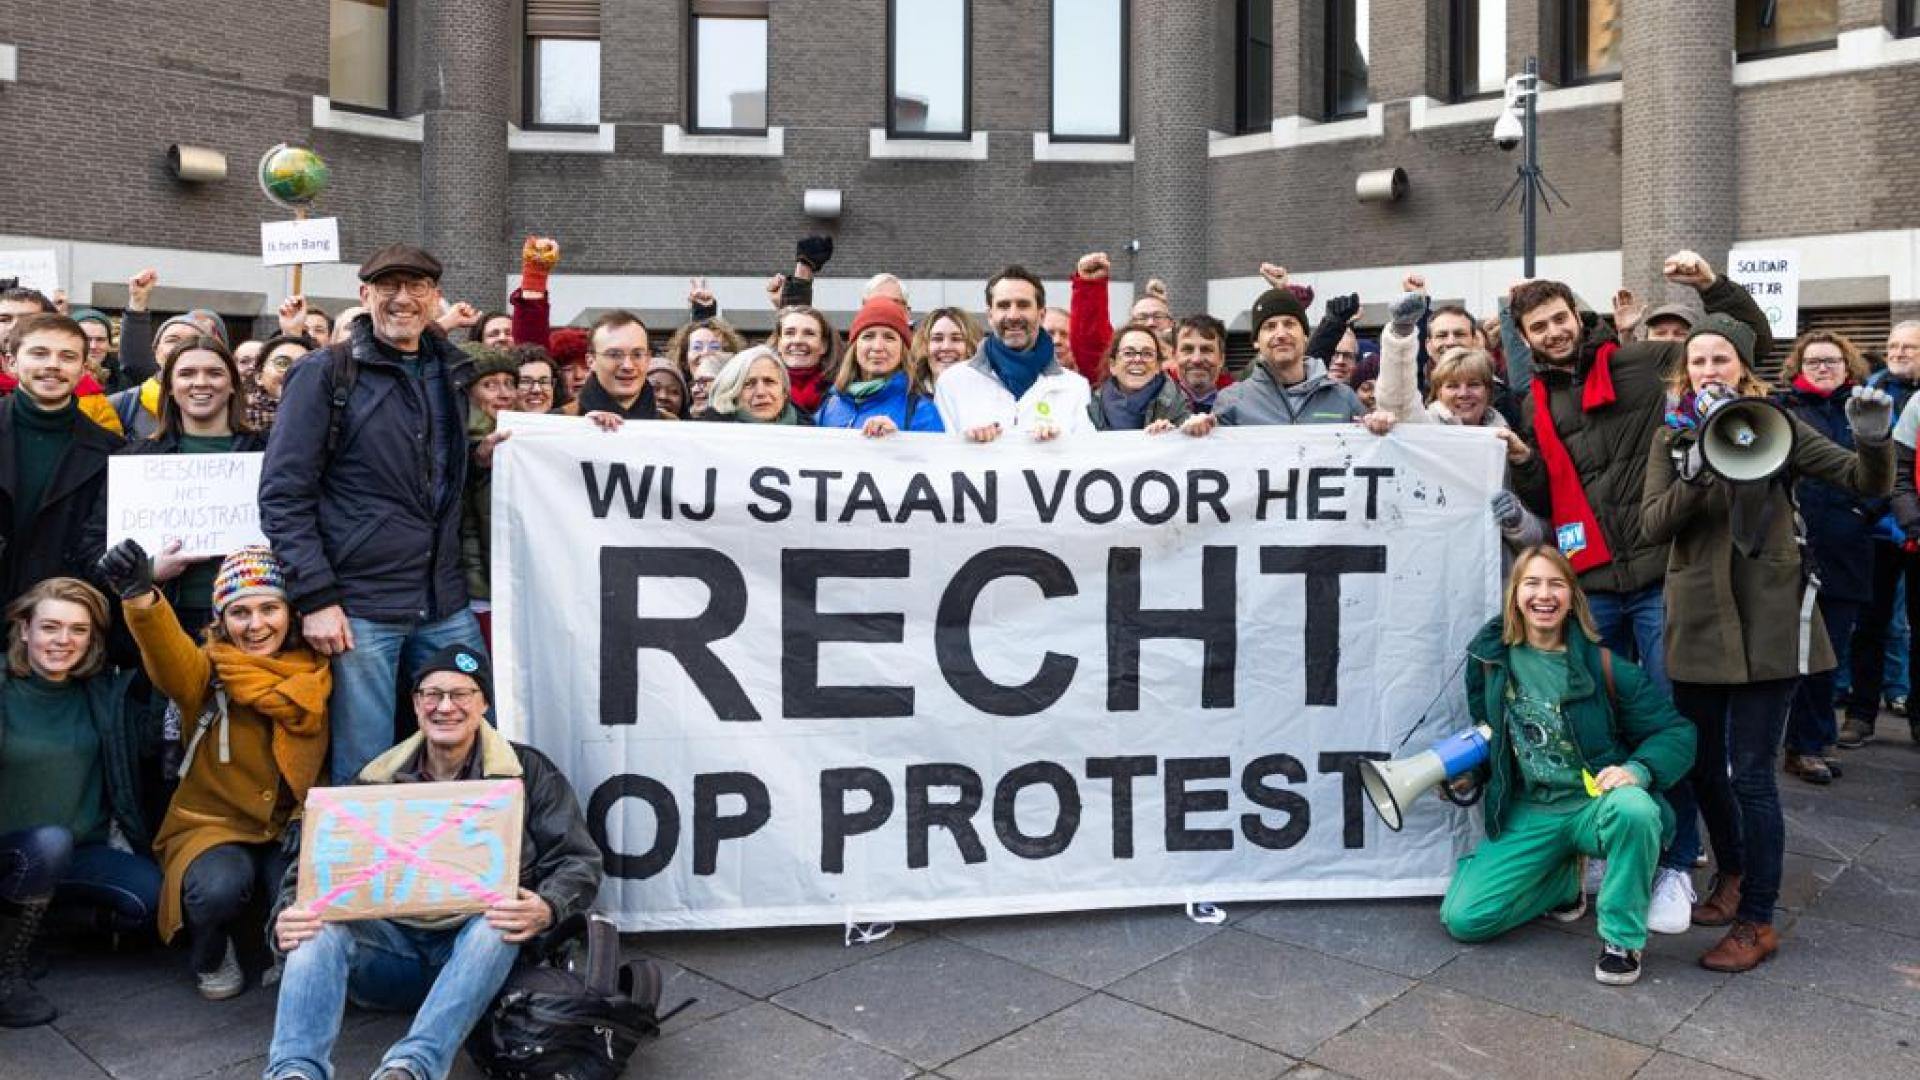 Tearfund steunt met 50 maatschappelijke organisaties het recht op (klimaat)protest